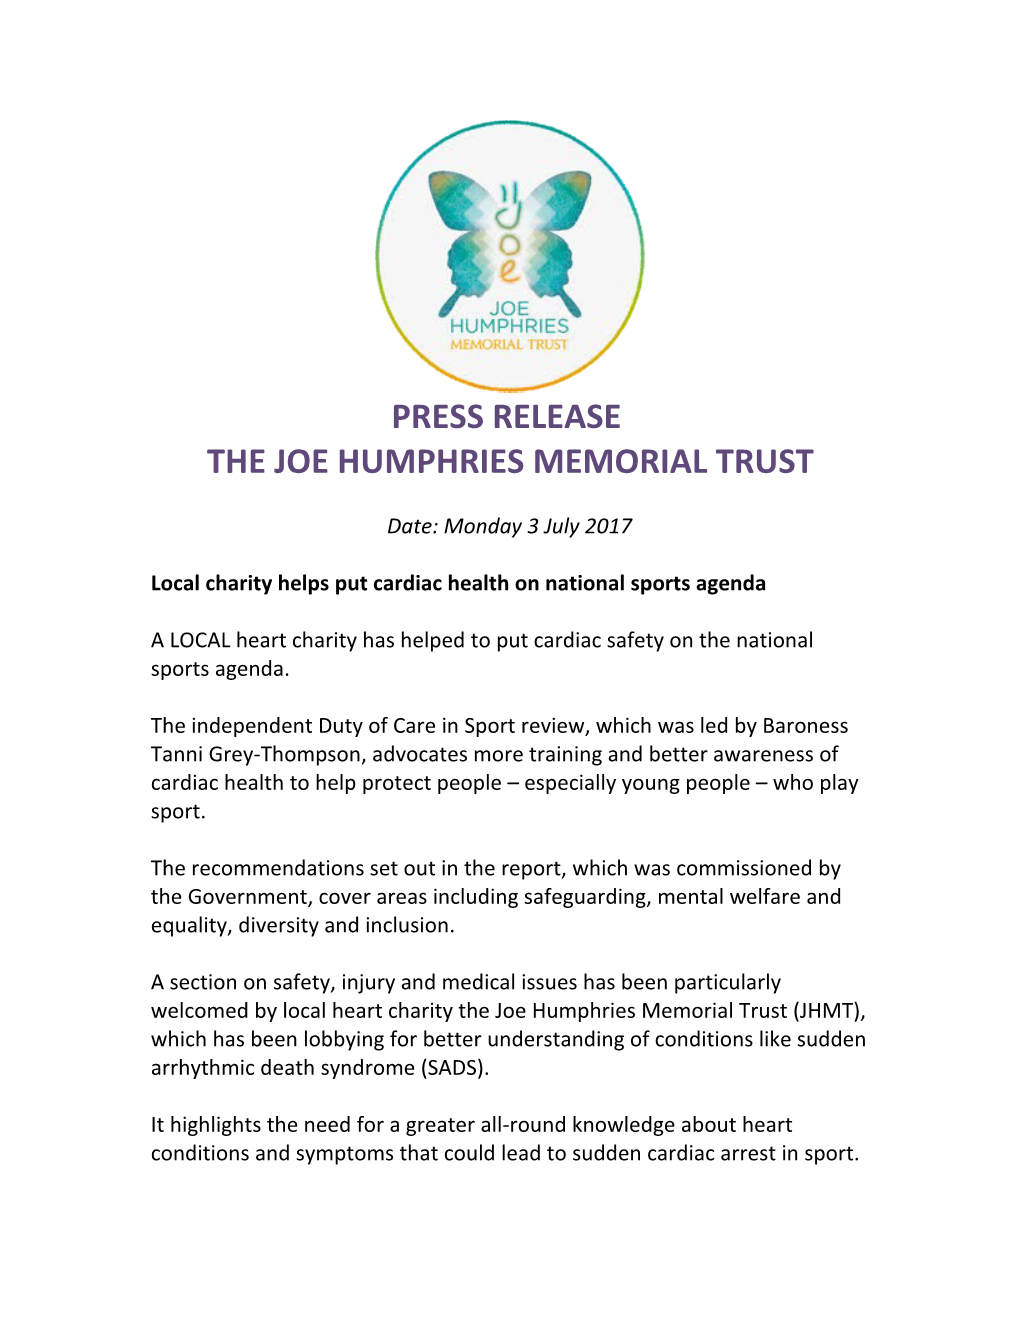 The Joe Humphries Memorial Trust